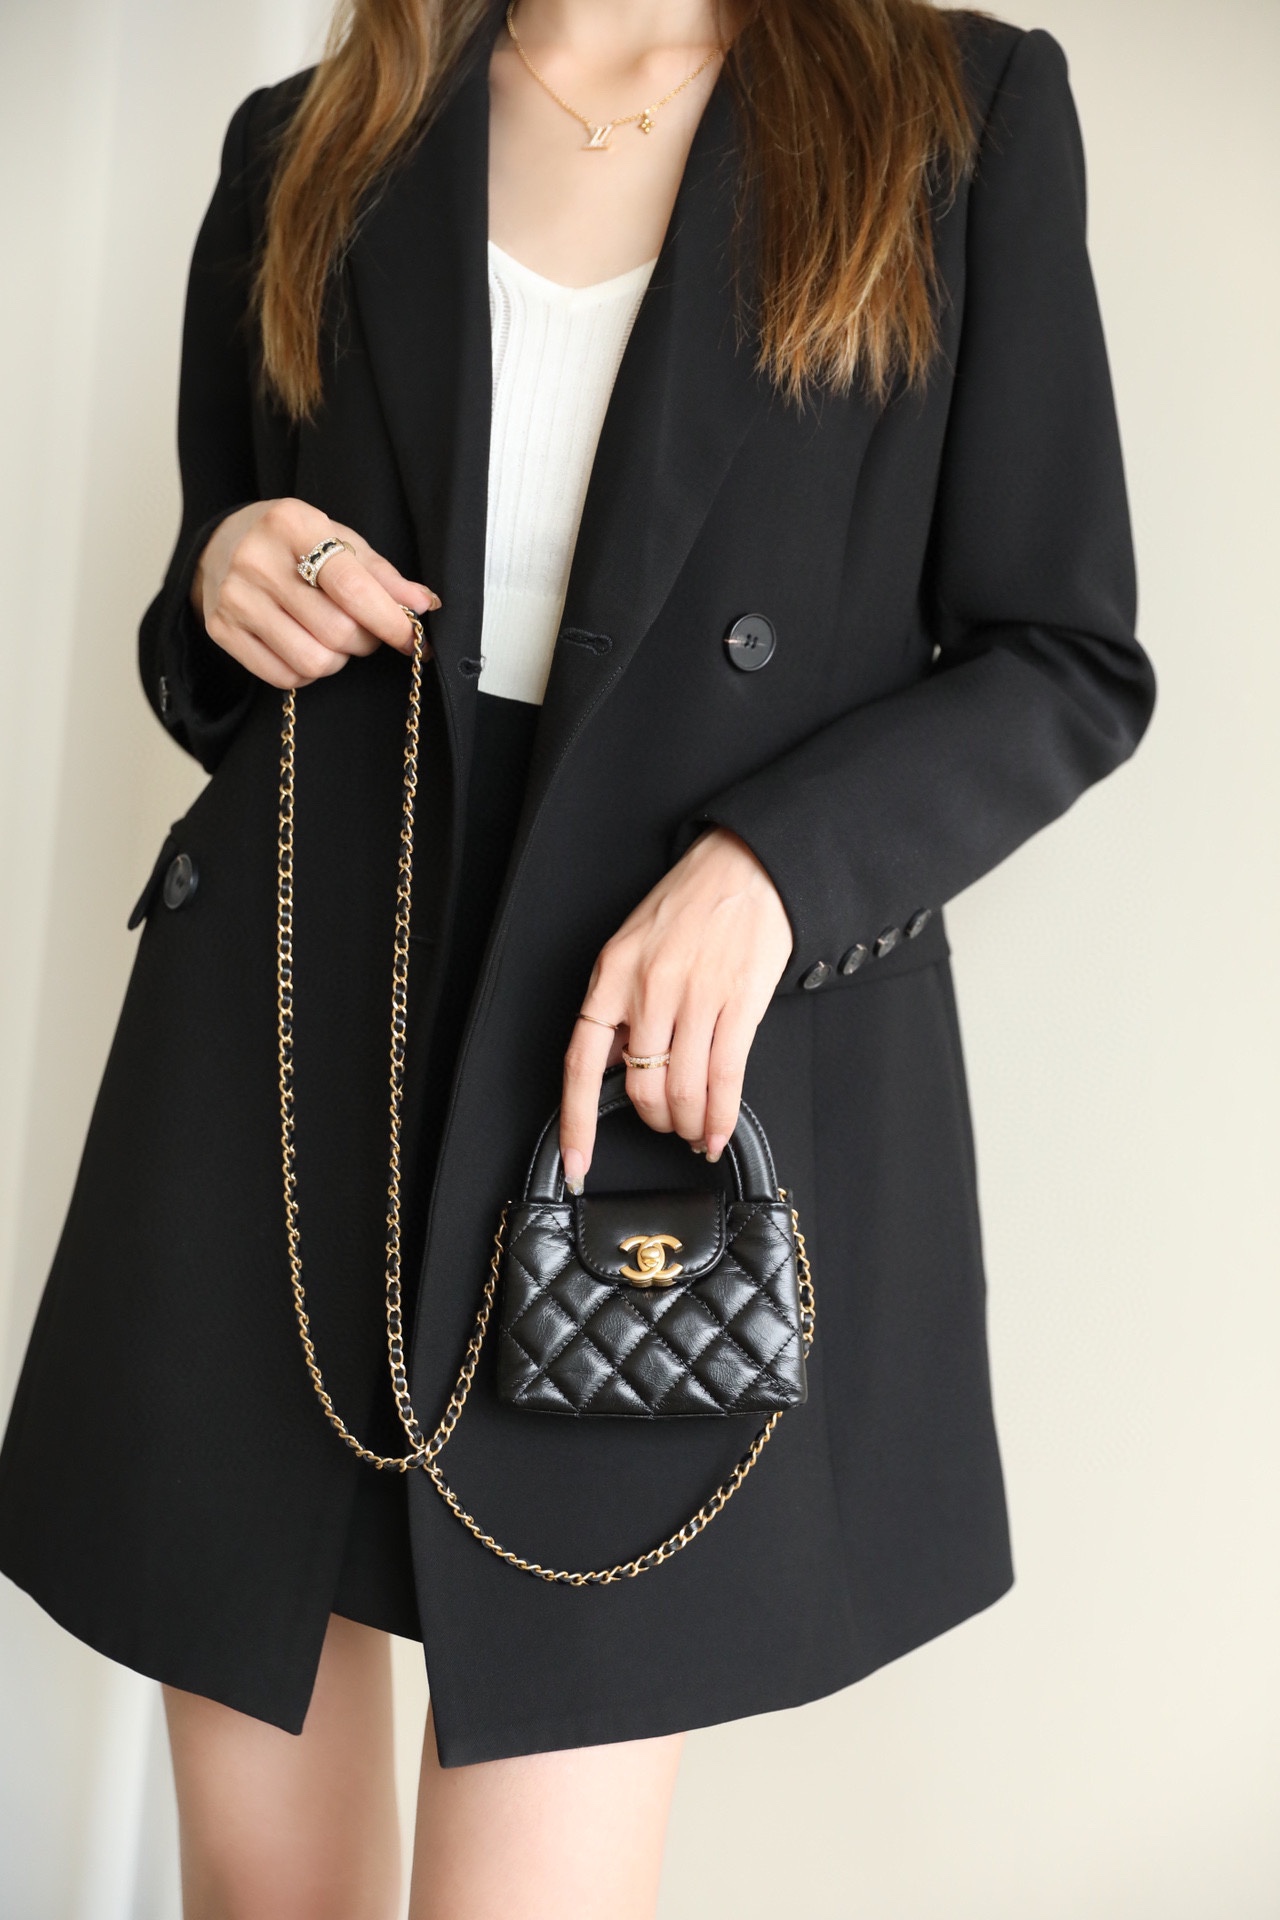 FashionReps | The Best Quality Replica Fashion Handbags Accessories Online Fashionreps Chanel 23K Kelly Mini Tote Bag